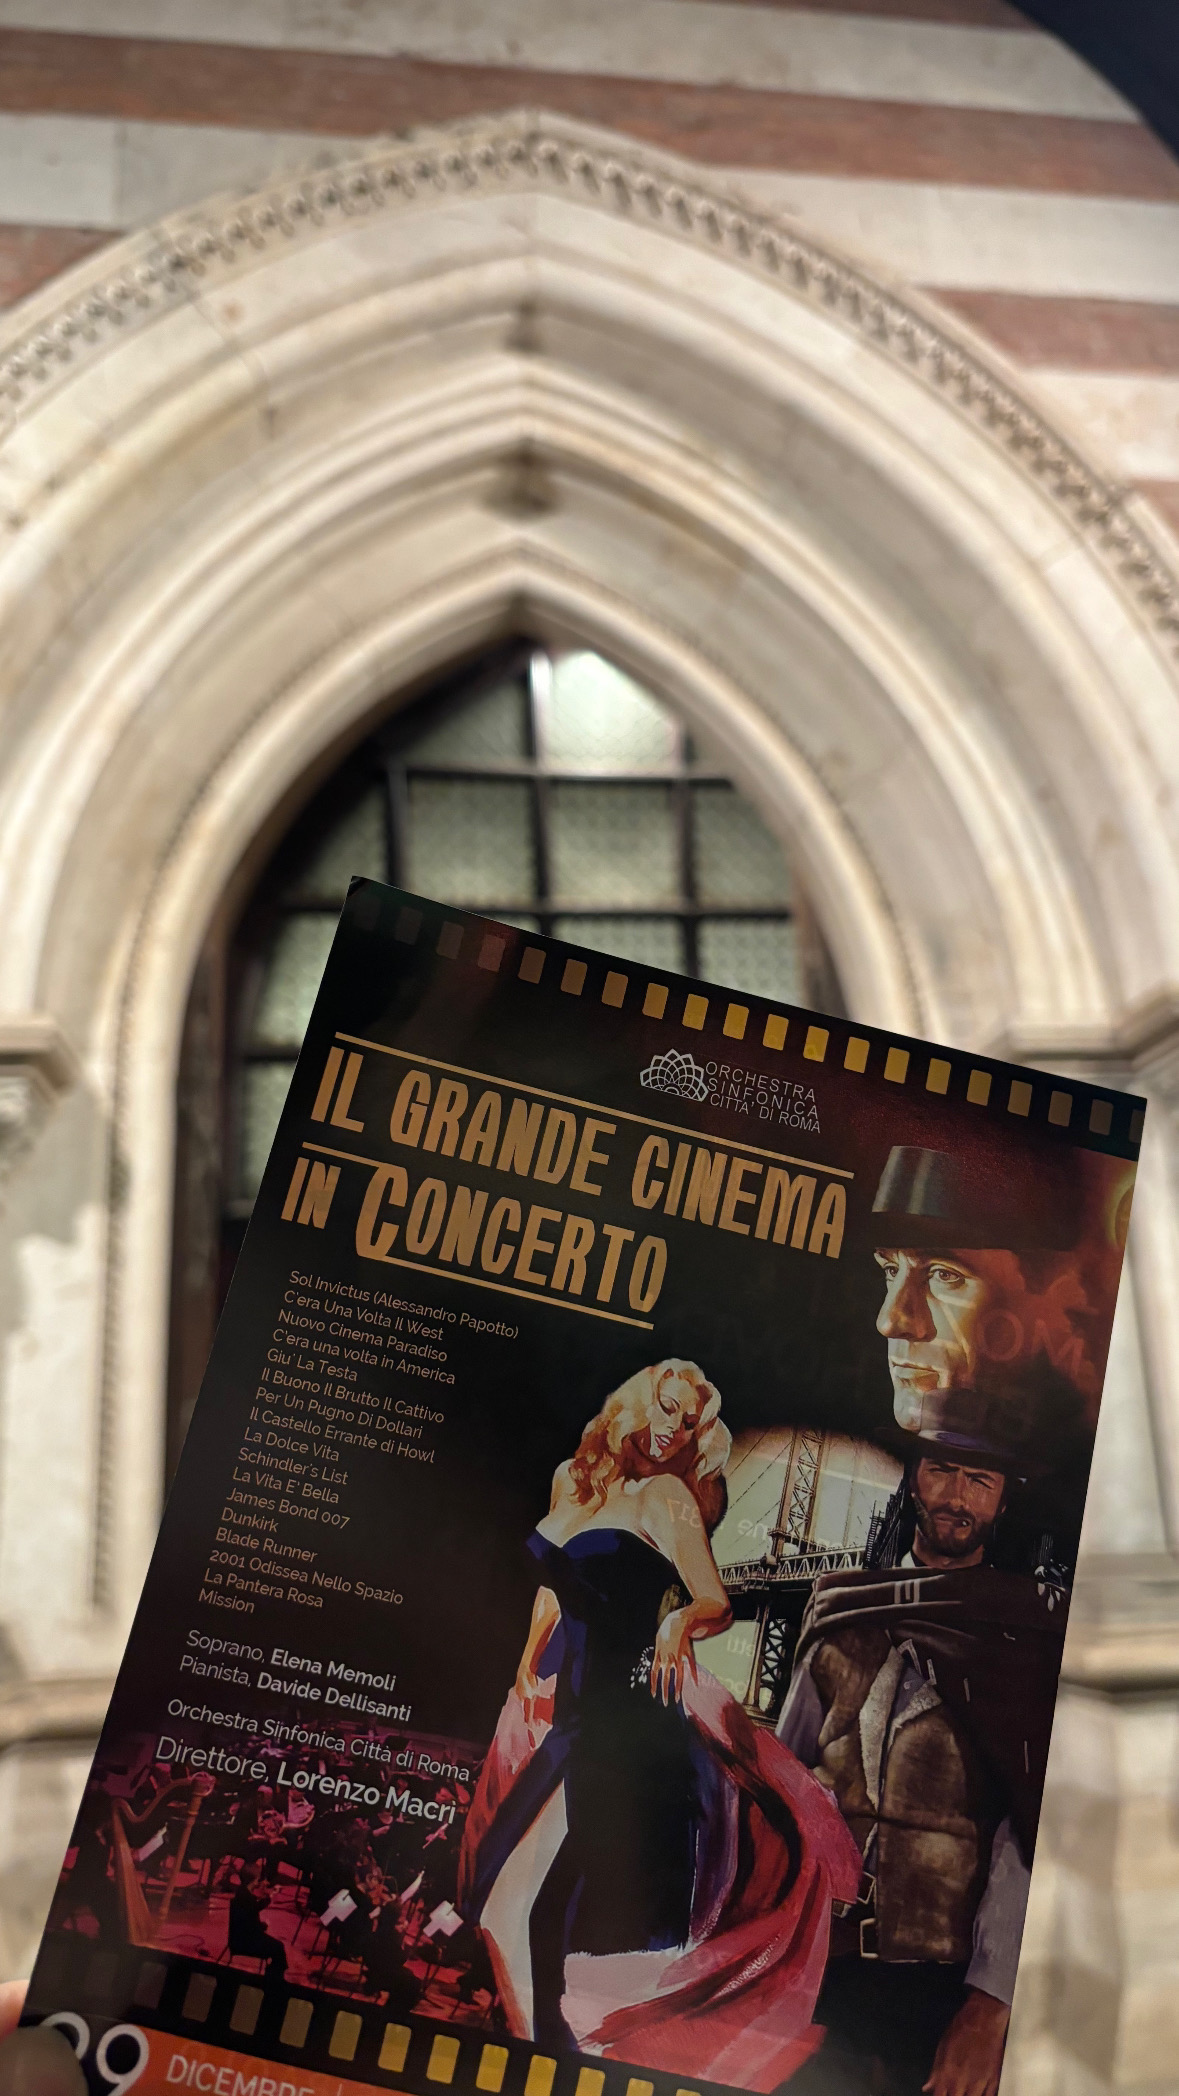 L'Orchestra Sinfonica Città di Roma diretta da Lorenzo Macrì nella Chiesa di San Paolo entro le Mura